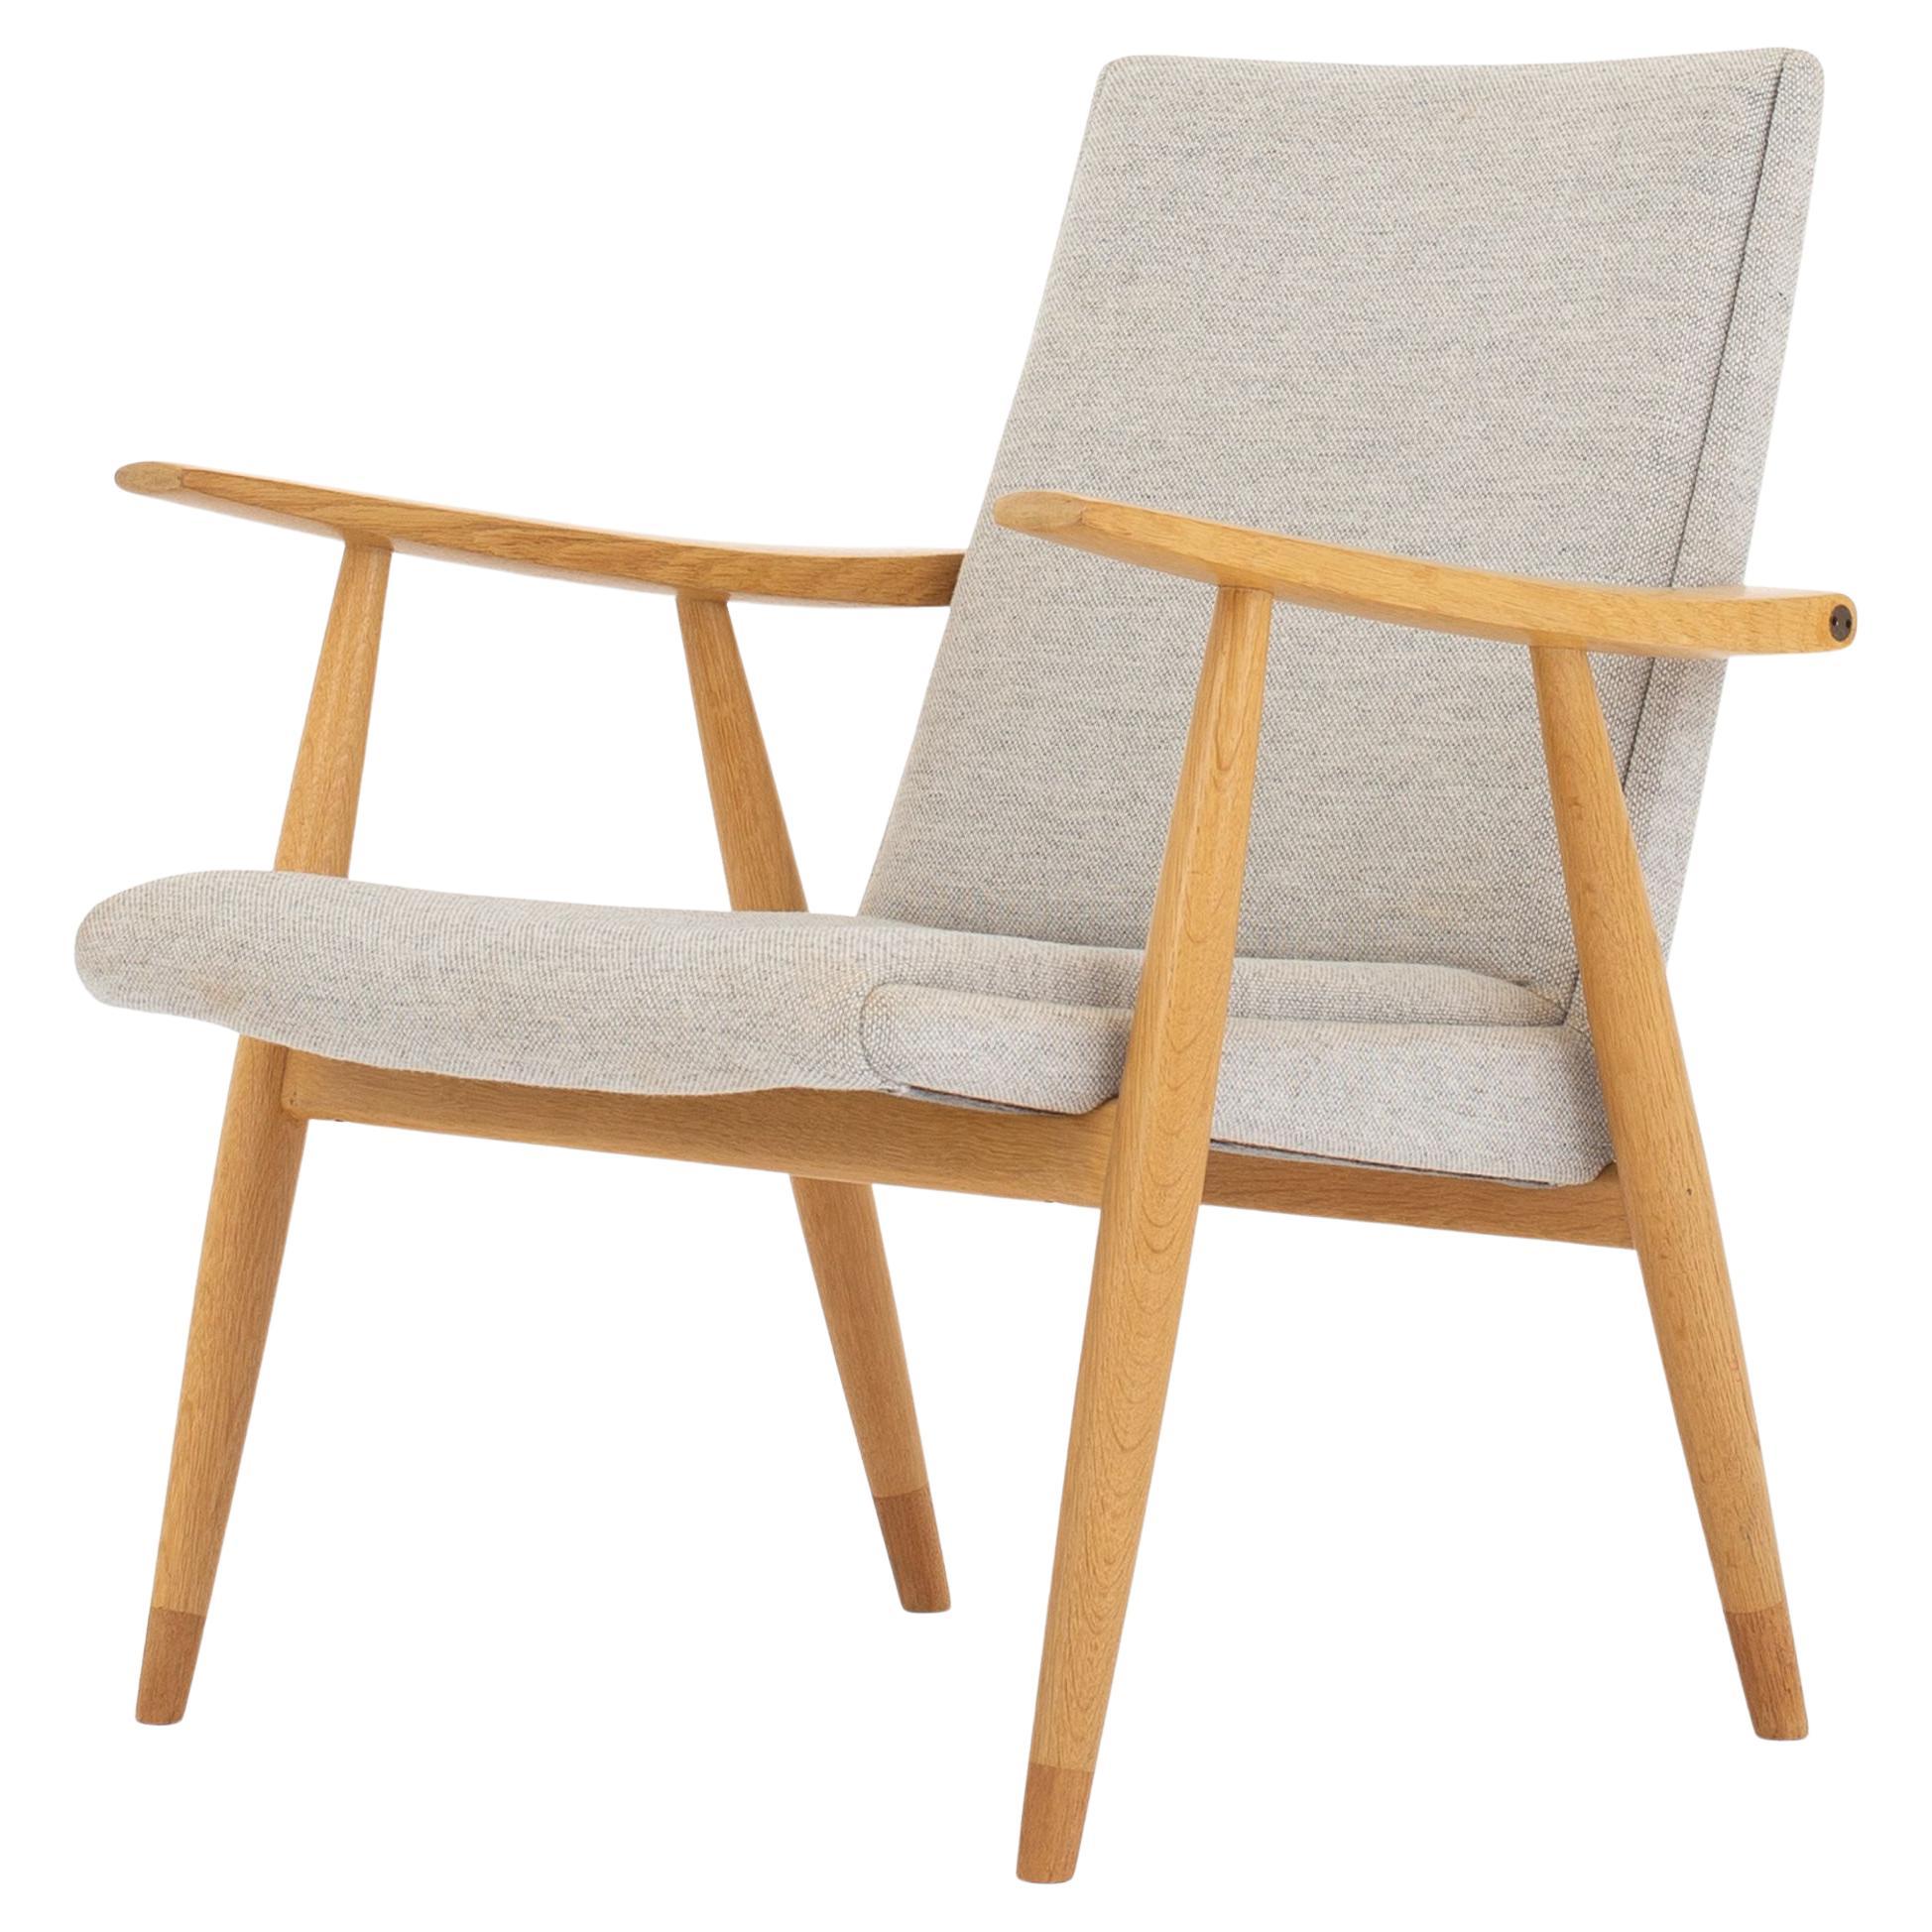 Easy Chair by Hans J. Wegner